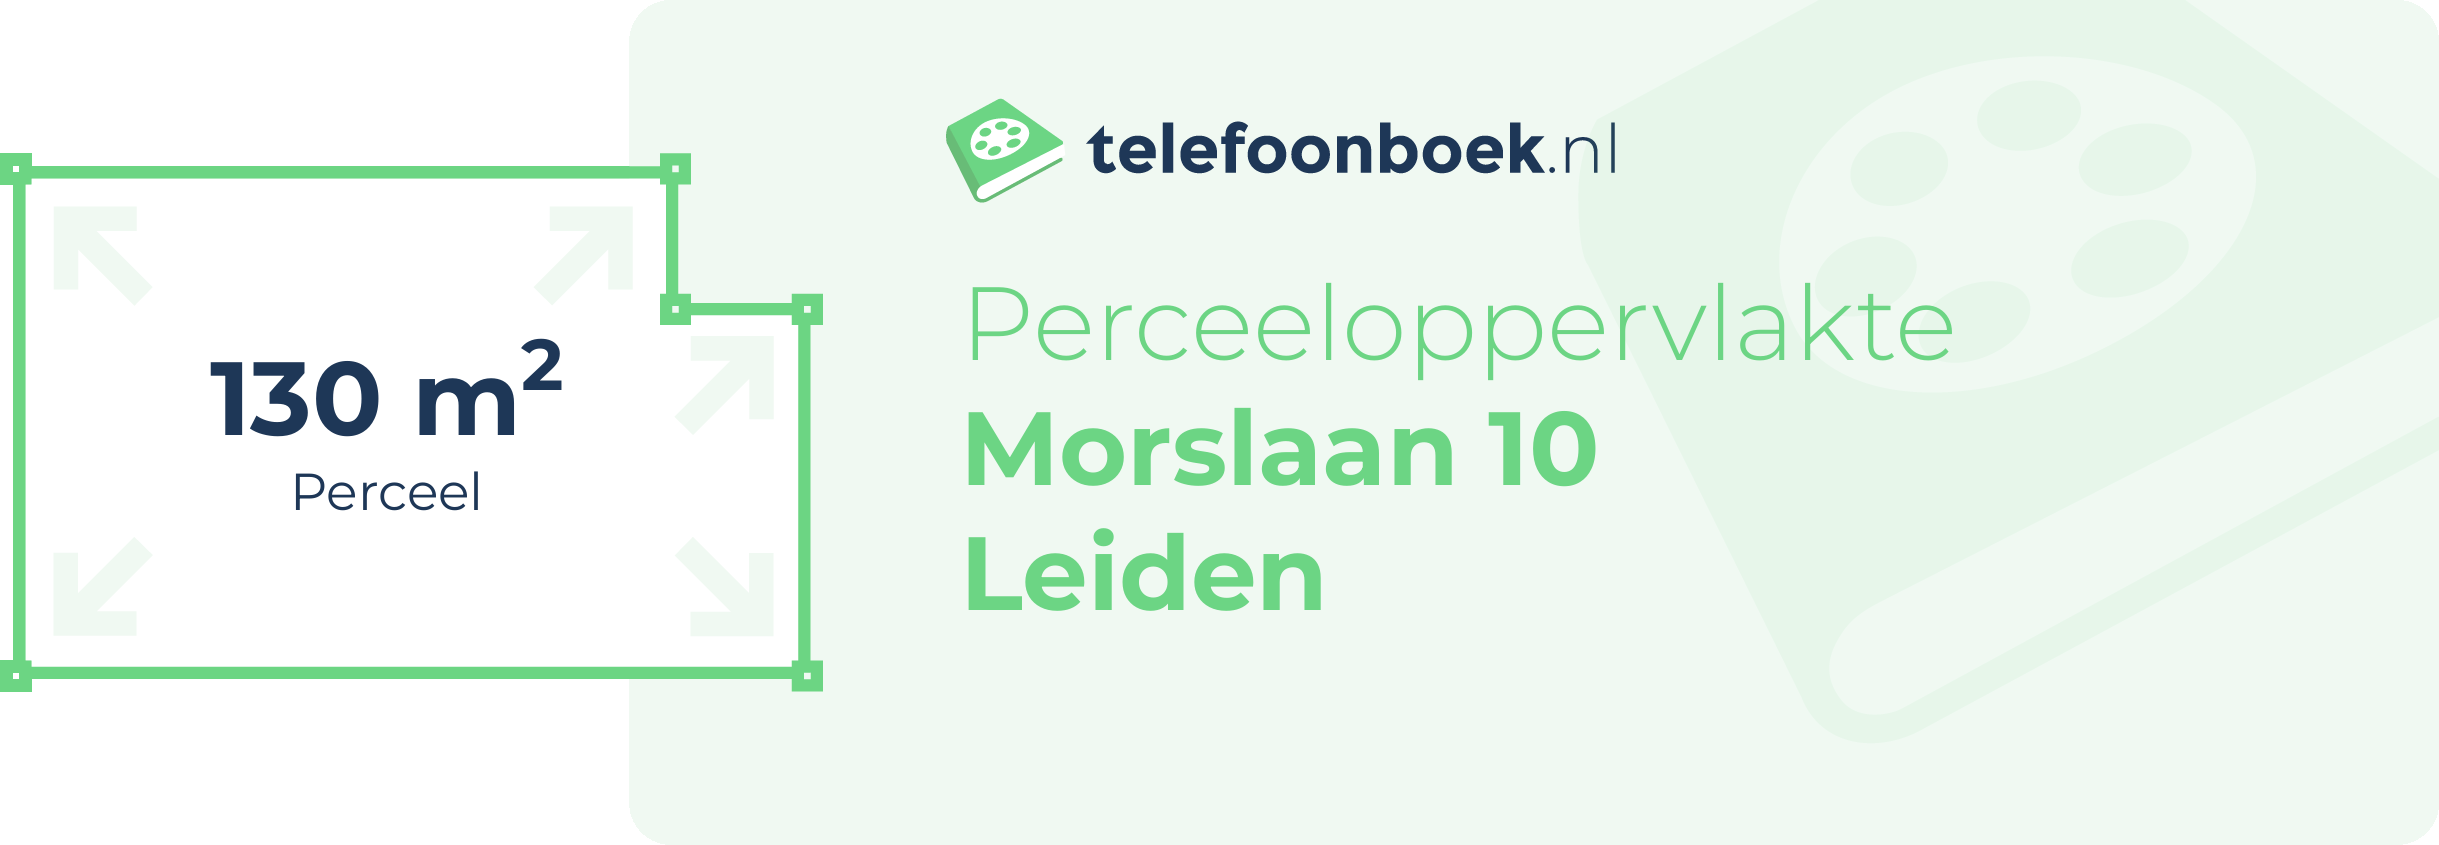 Perceeloppervlakte Morslaan 10 Leiden